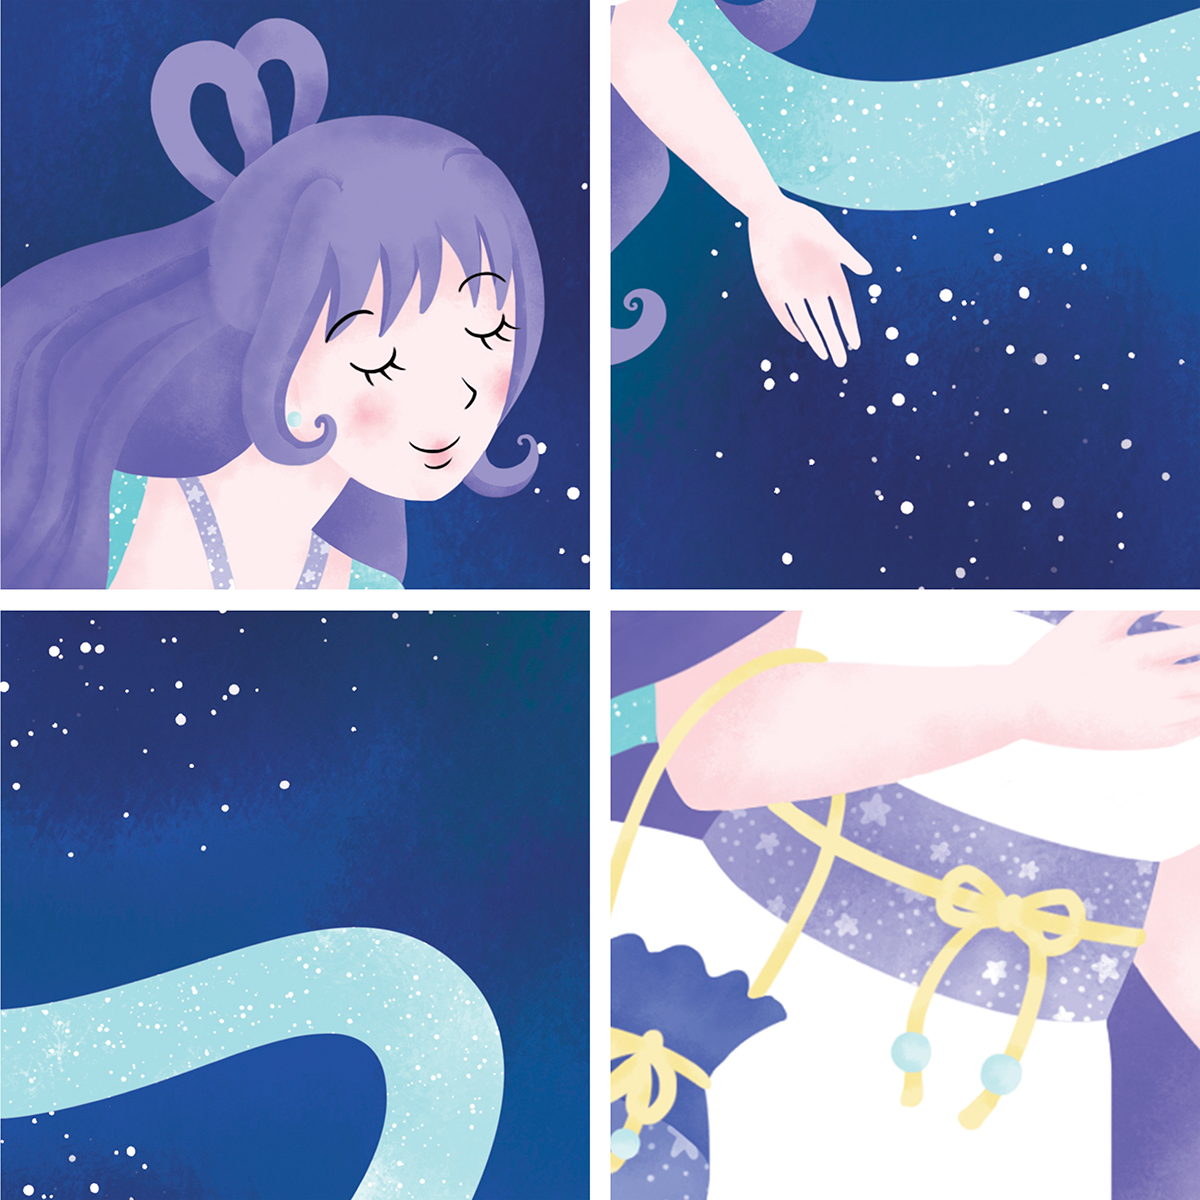 star goddess night starry stars Magical fairy tale blue purple woman Beautiful myth legend dress SKY